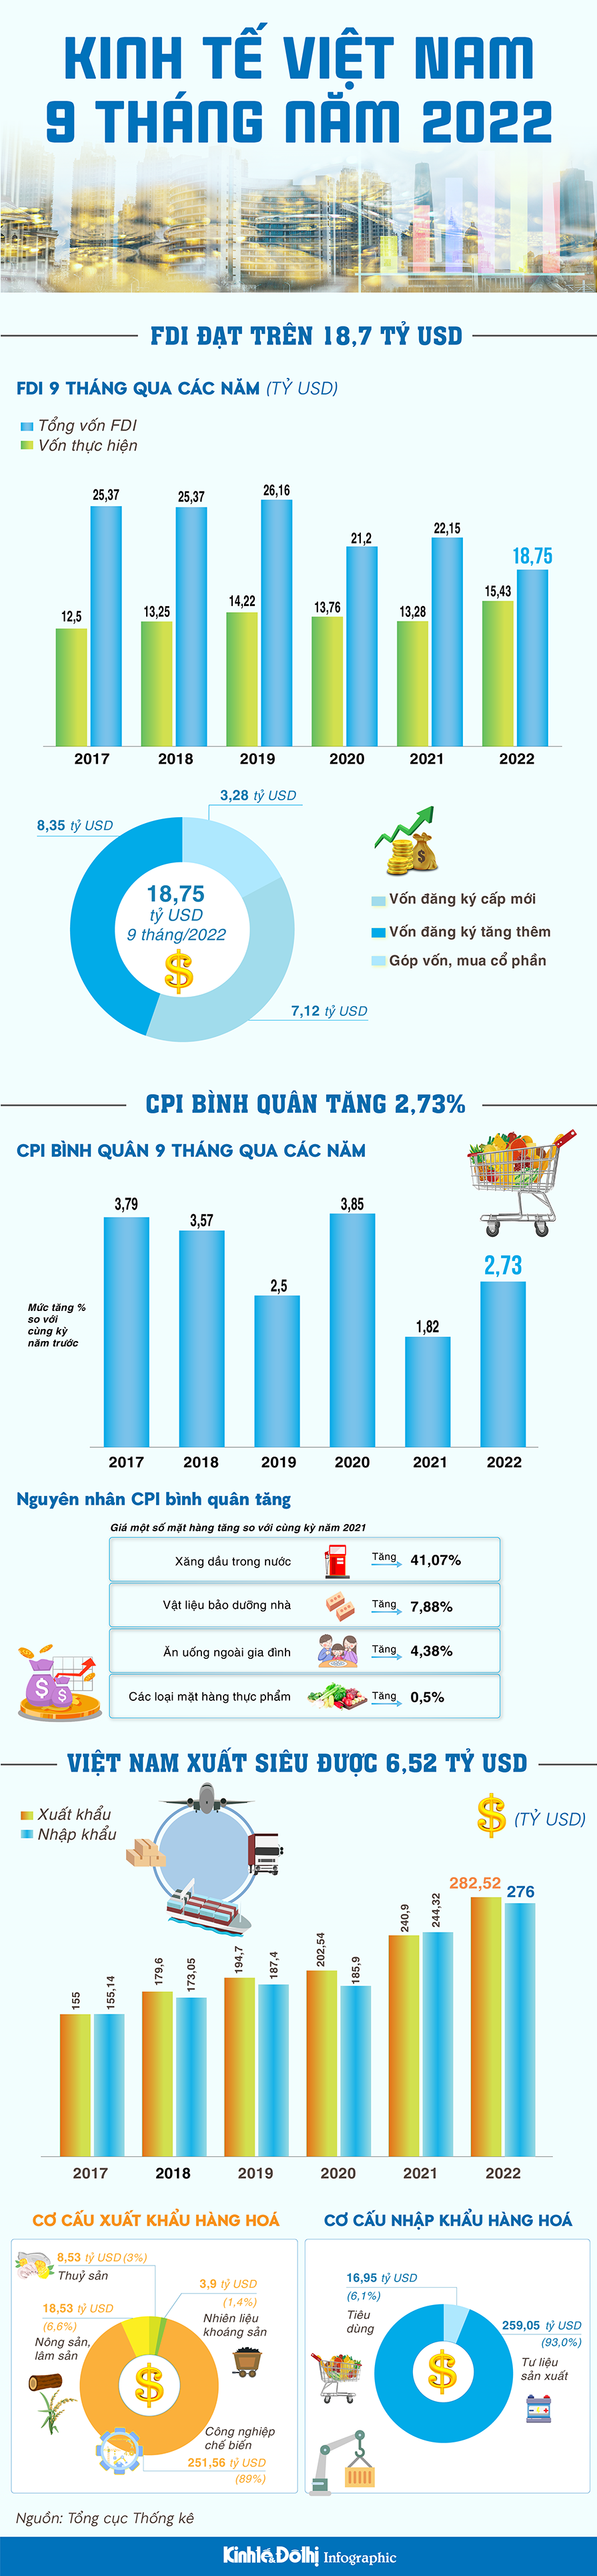 9 tháng năm 2022: Kinh tế Việt Nam khởi sắc - Ảnh 1